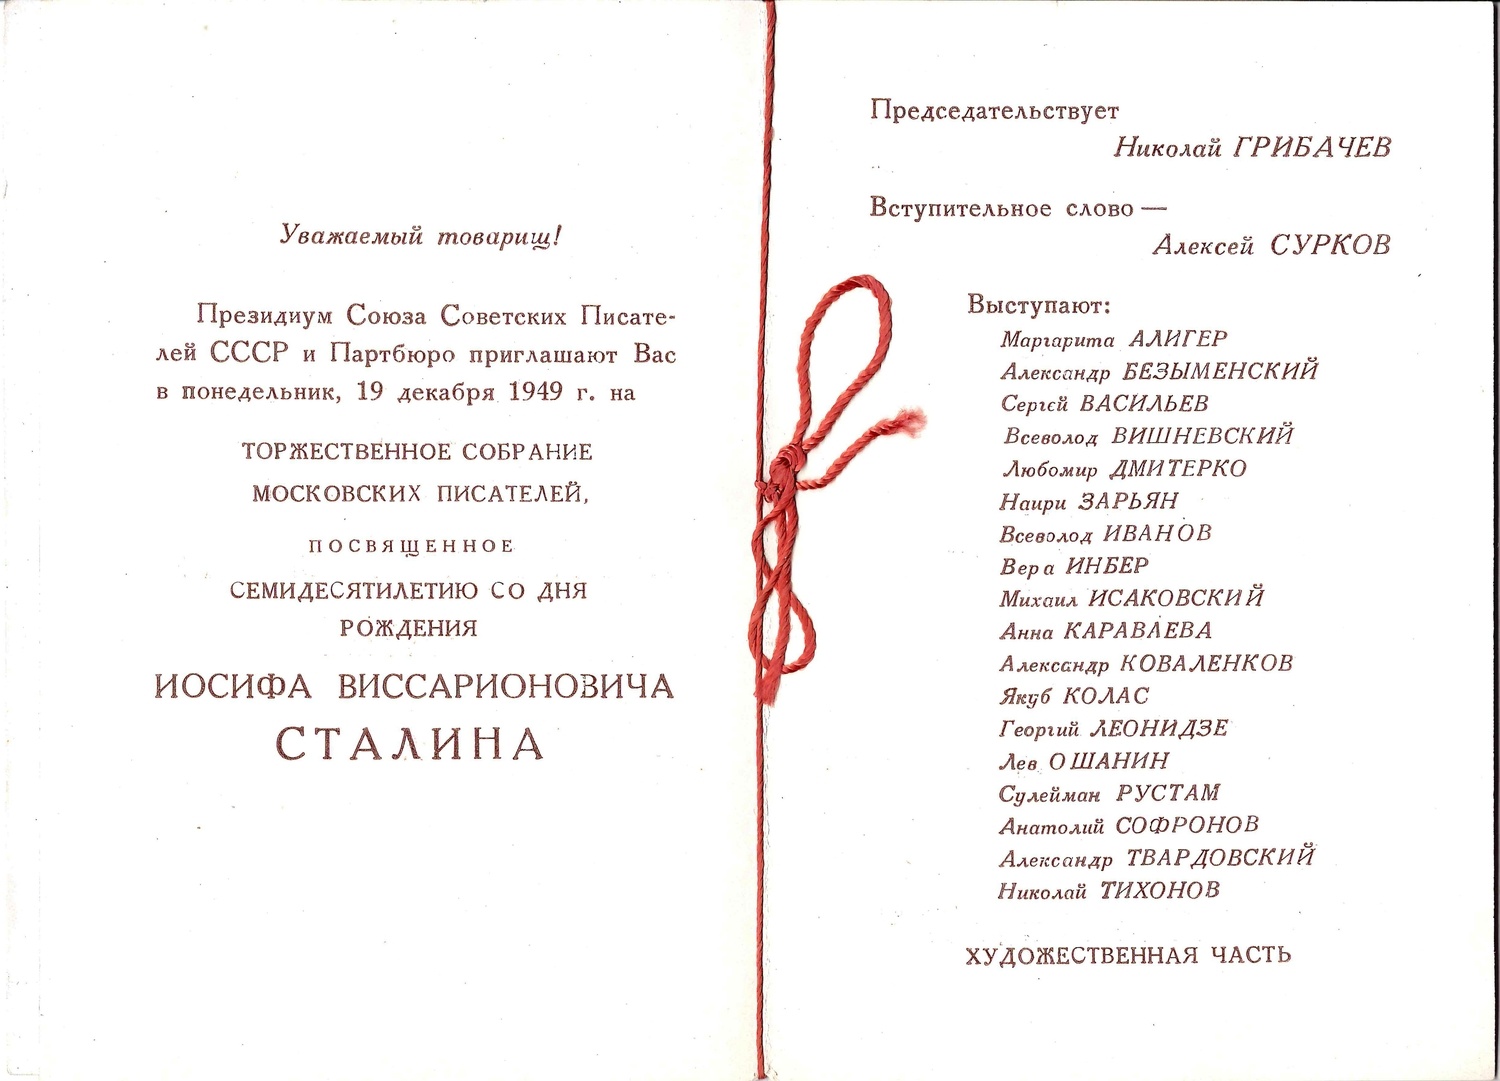 Пригласительный билет на торжественное собрание московских писателей, посвящённое семидесятилетию со дня рождения Иосифа Виссарионовича Сталина 19 декабря 1949 года.